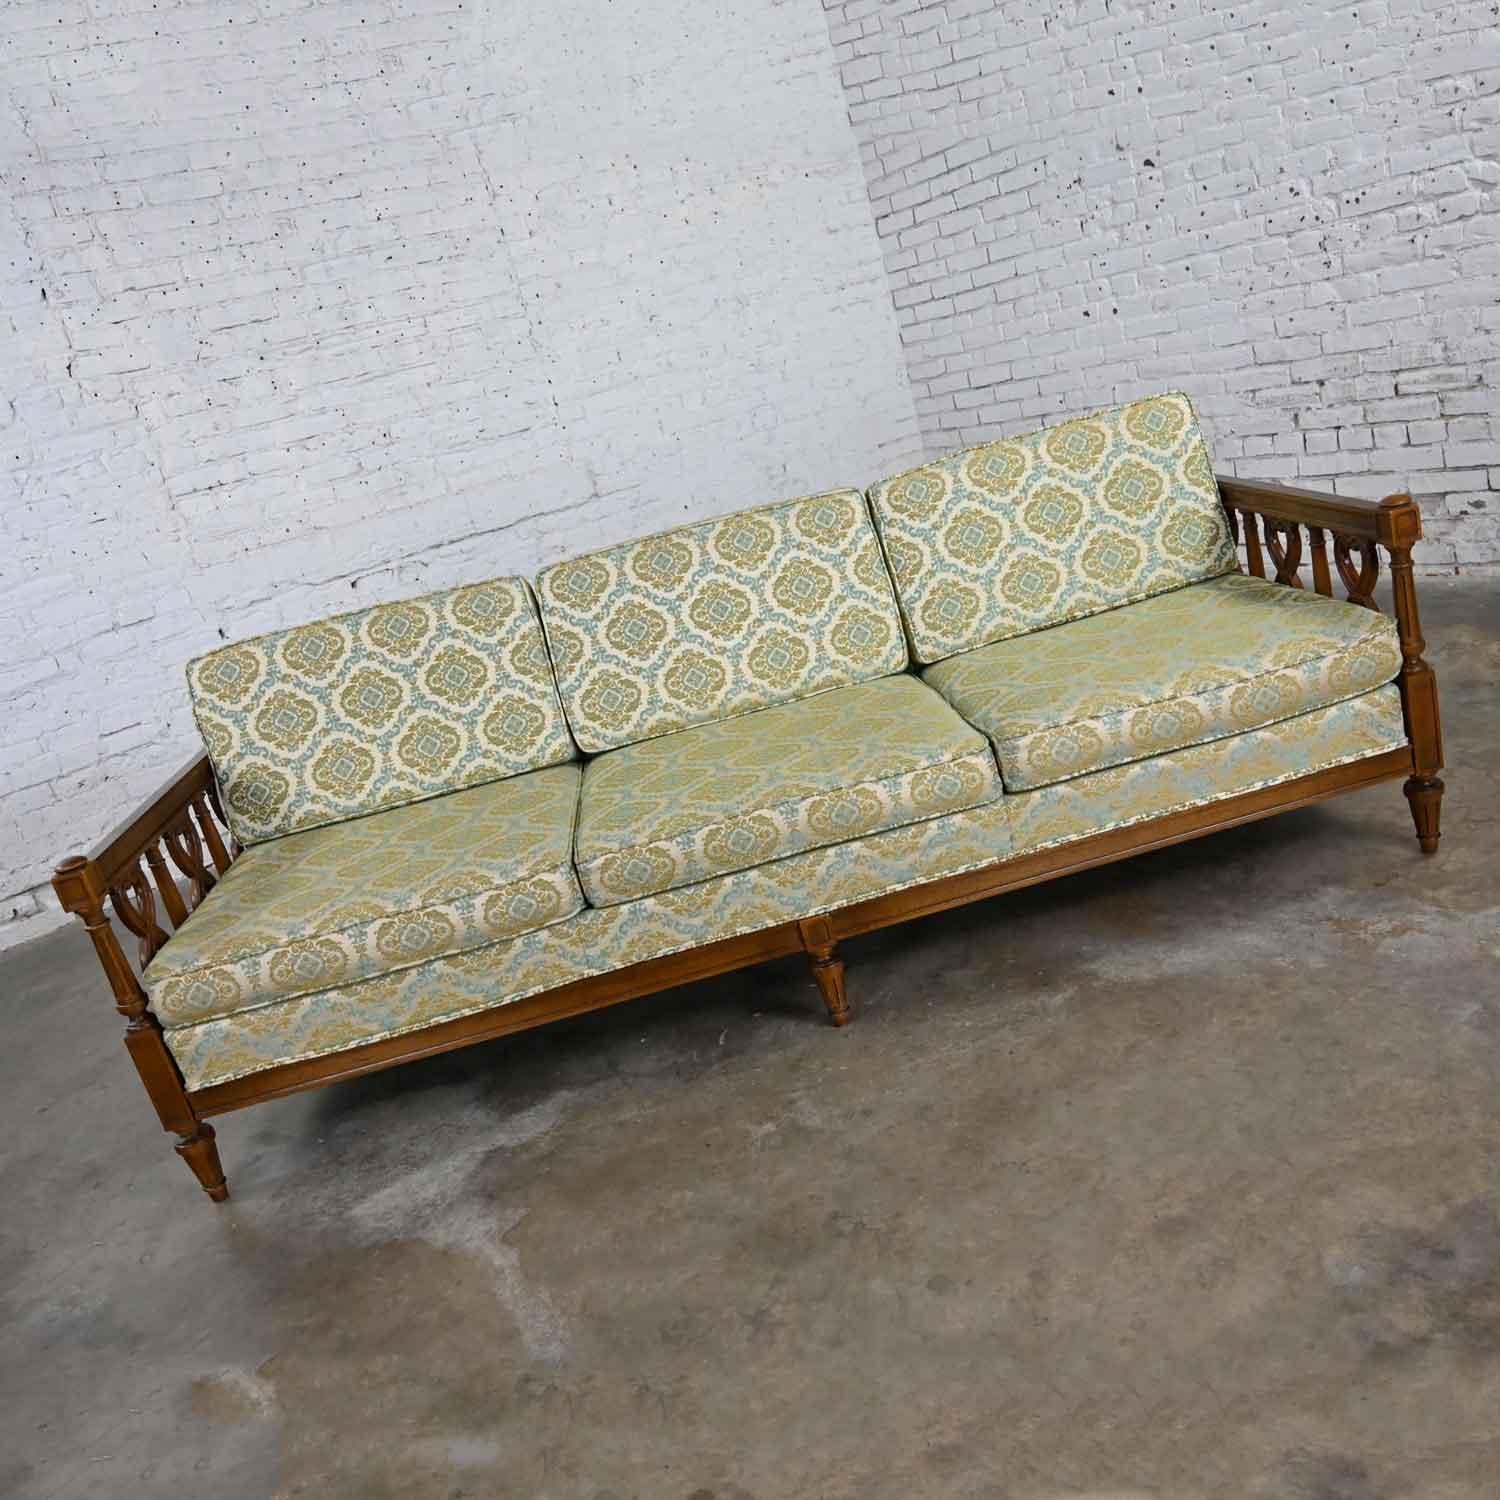 Vintage Mediterranean Spanish Revival Style Sofa Wood Details by American Furn 4